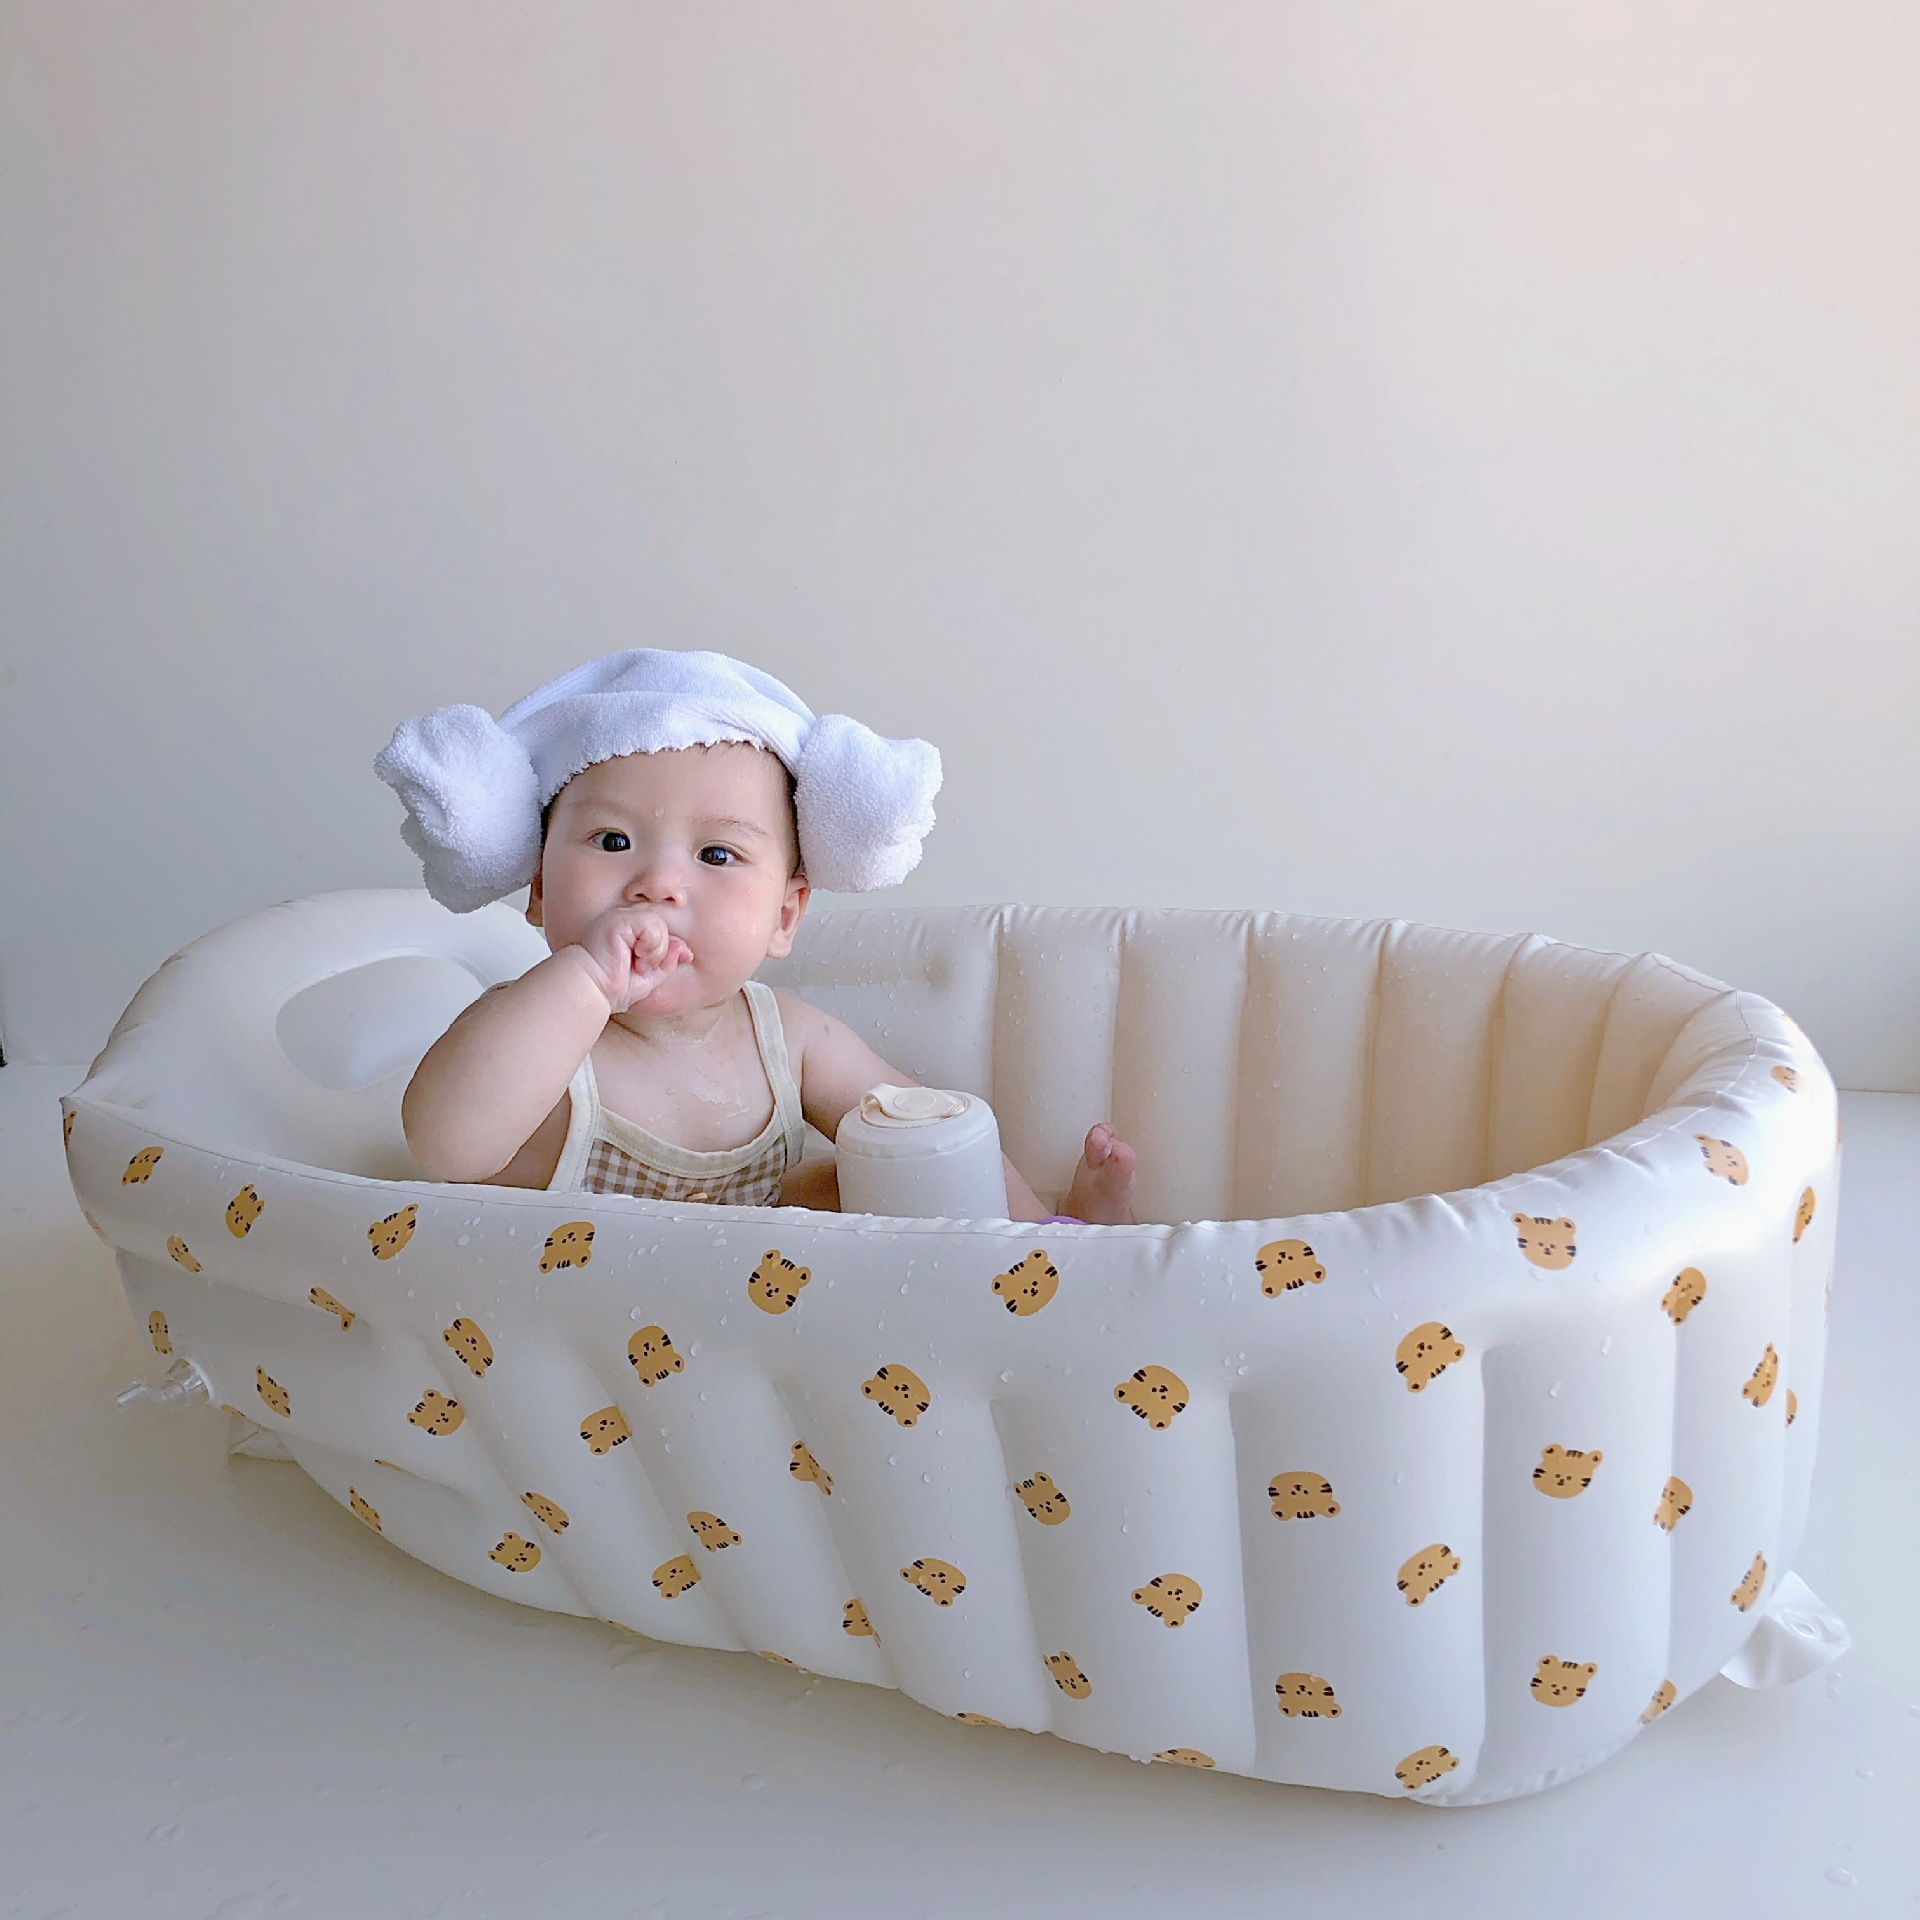 婴儿洗澡盆宝宝浴盆充气浴缸外出泡澡桶儿童可坐可折叠浴桶游泳池